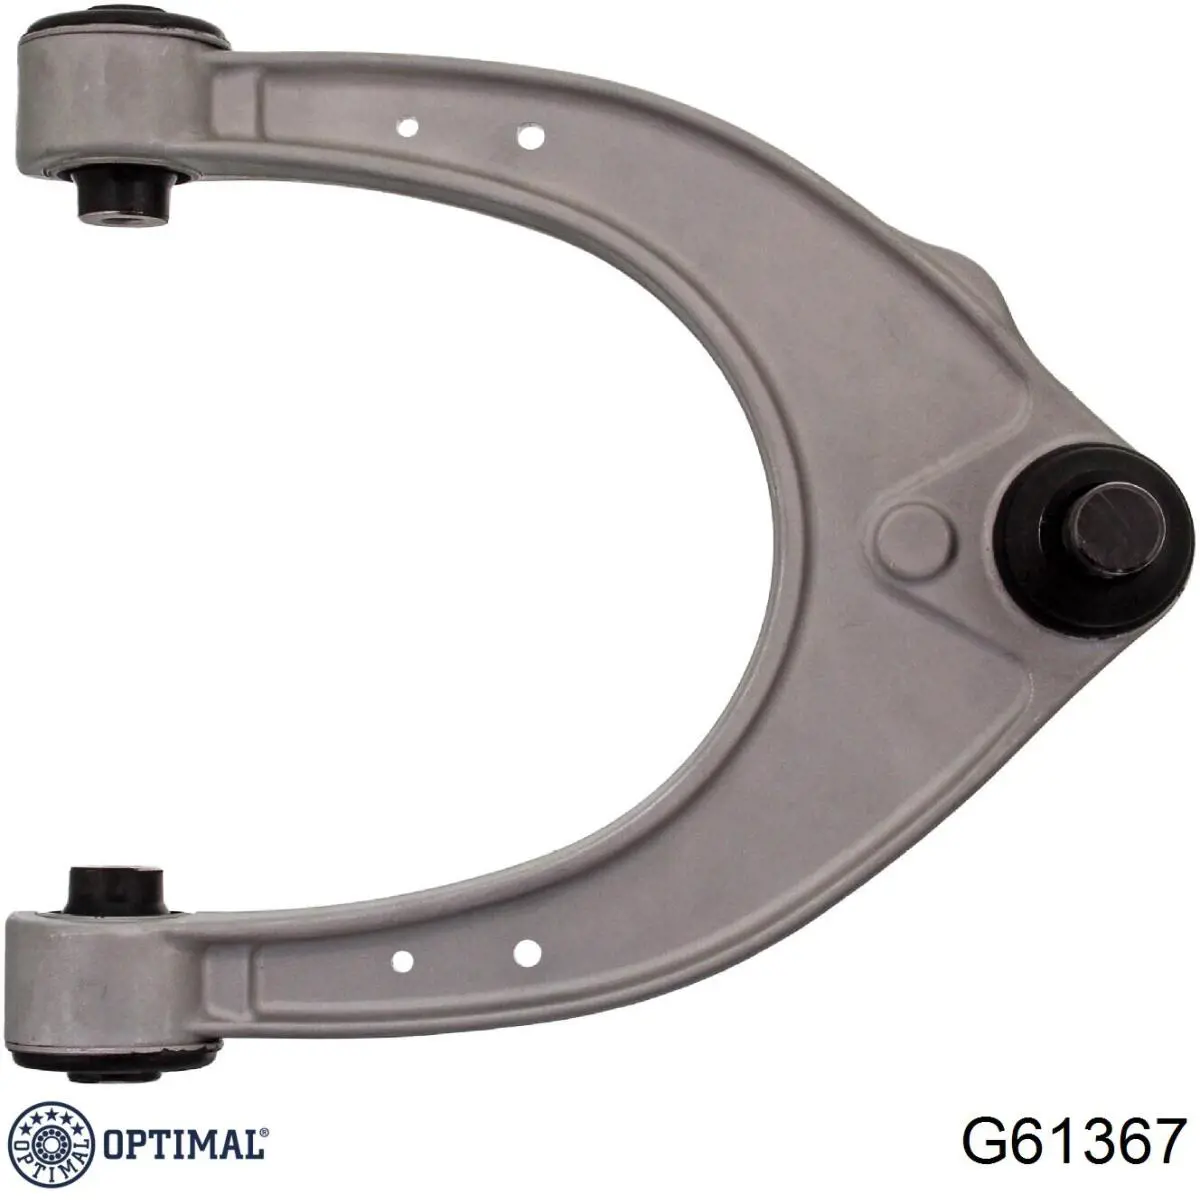 G61367 Optimal barra oscilante, suspensión de ruedas delantera, superior izquierda/derecha